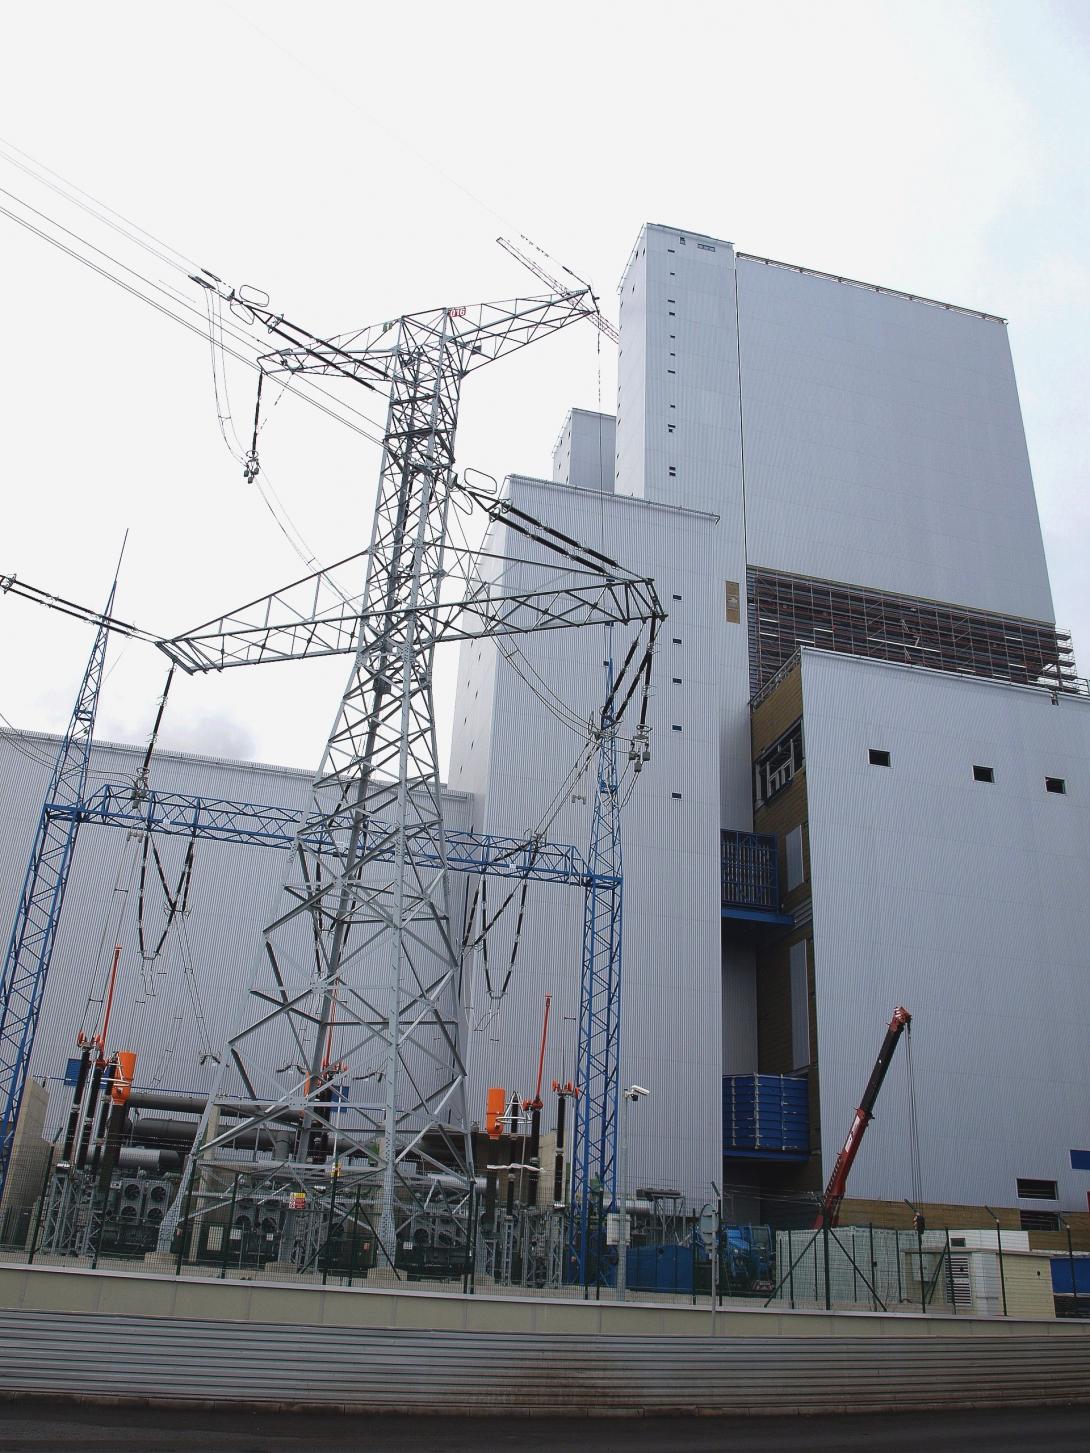 Vyvedení výkonu z nového bloku v Ledvicích je provedeno prostřednictvím tří jednofázových transformátorů na boku strojovny (Zdroj: ČEZ, a.s.)